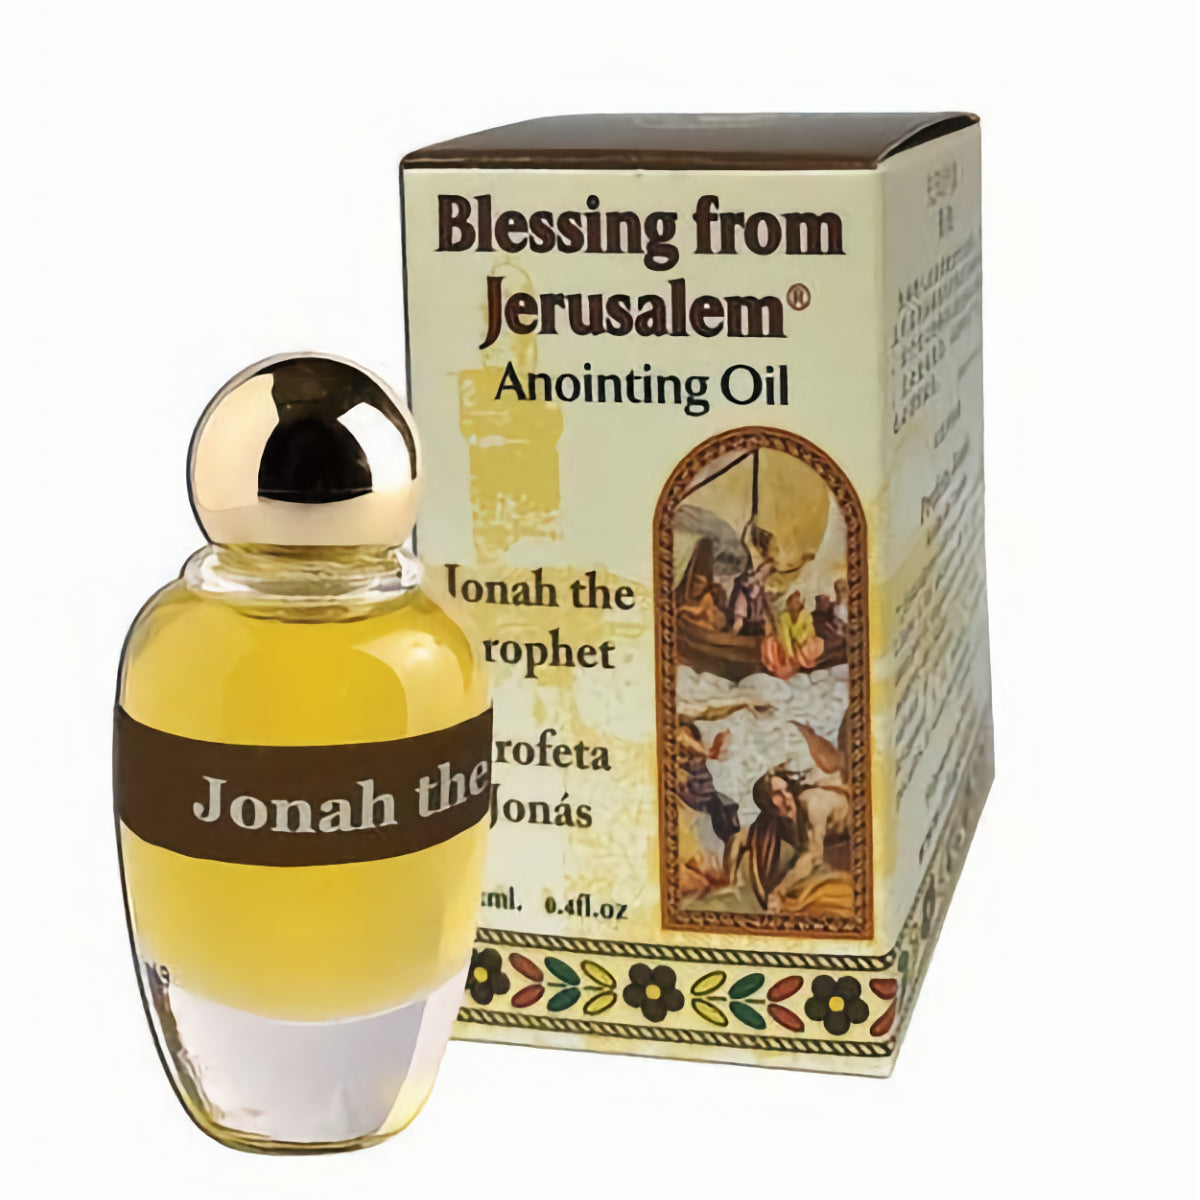 Anointing Oil - Jonah the Prophet Blessing From Jerusalem 12 ml - 0.4 fl. oz